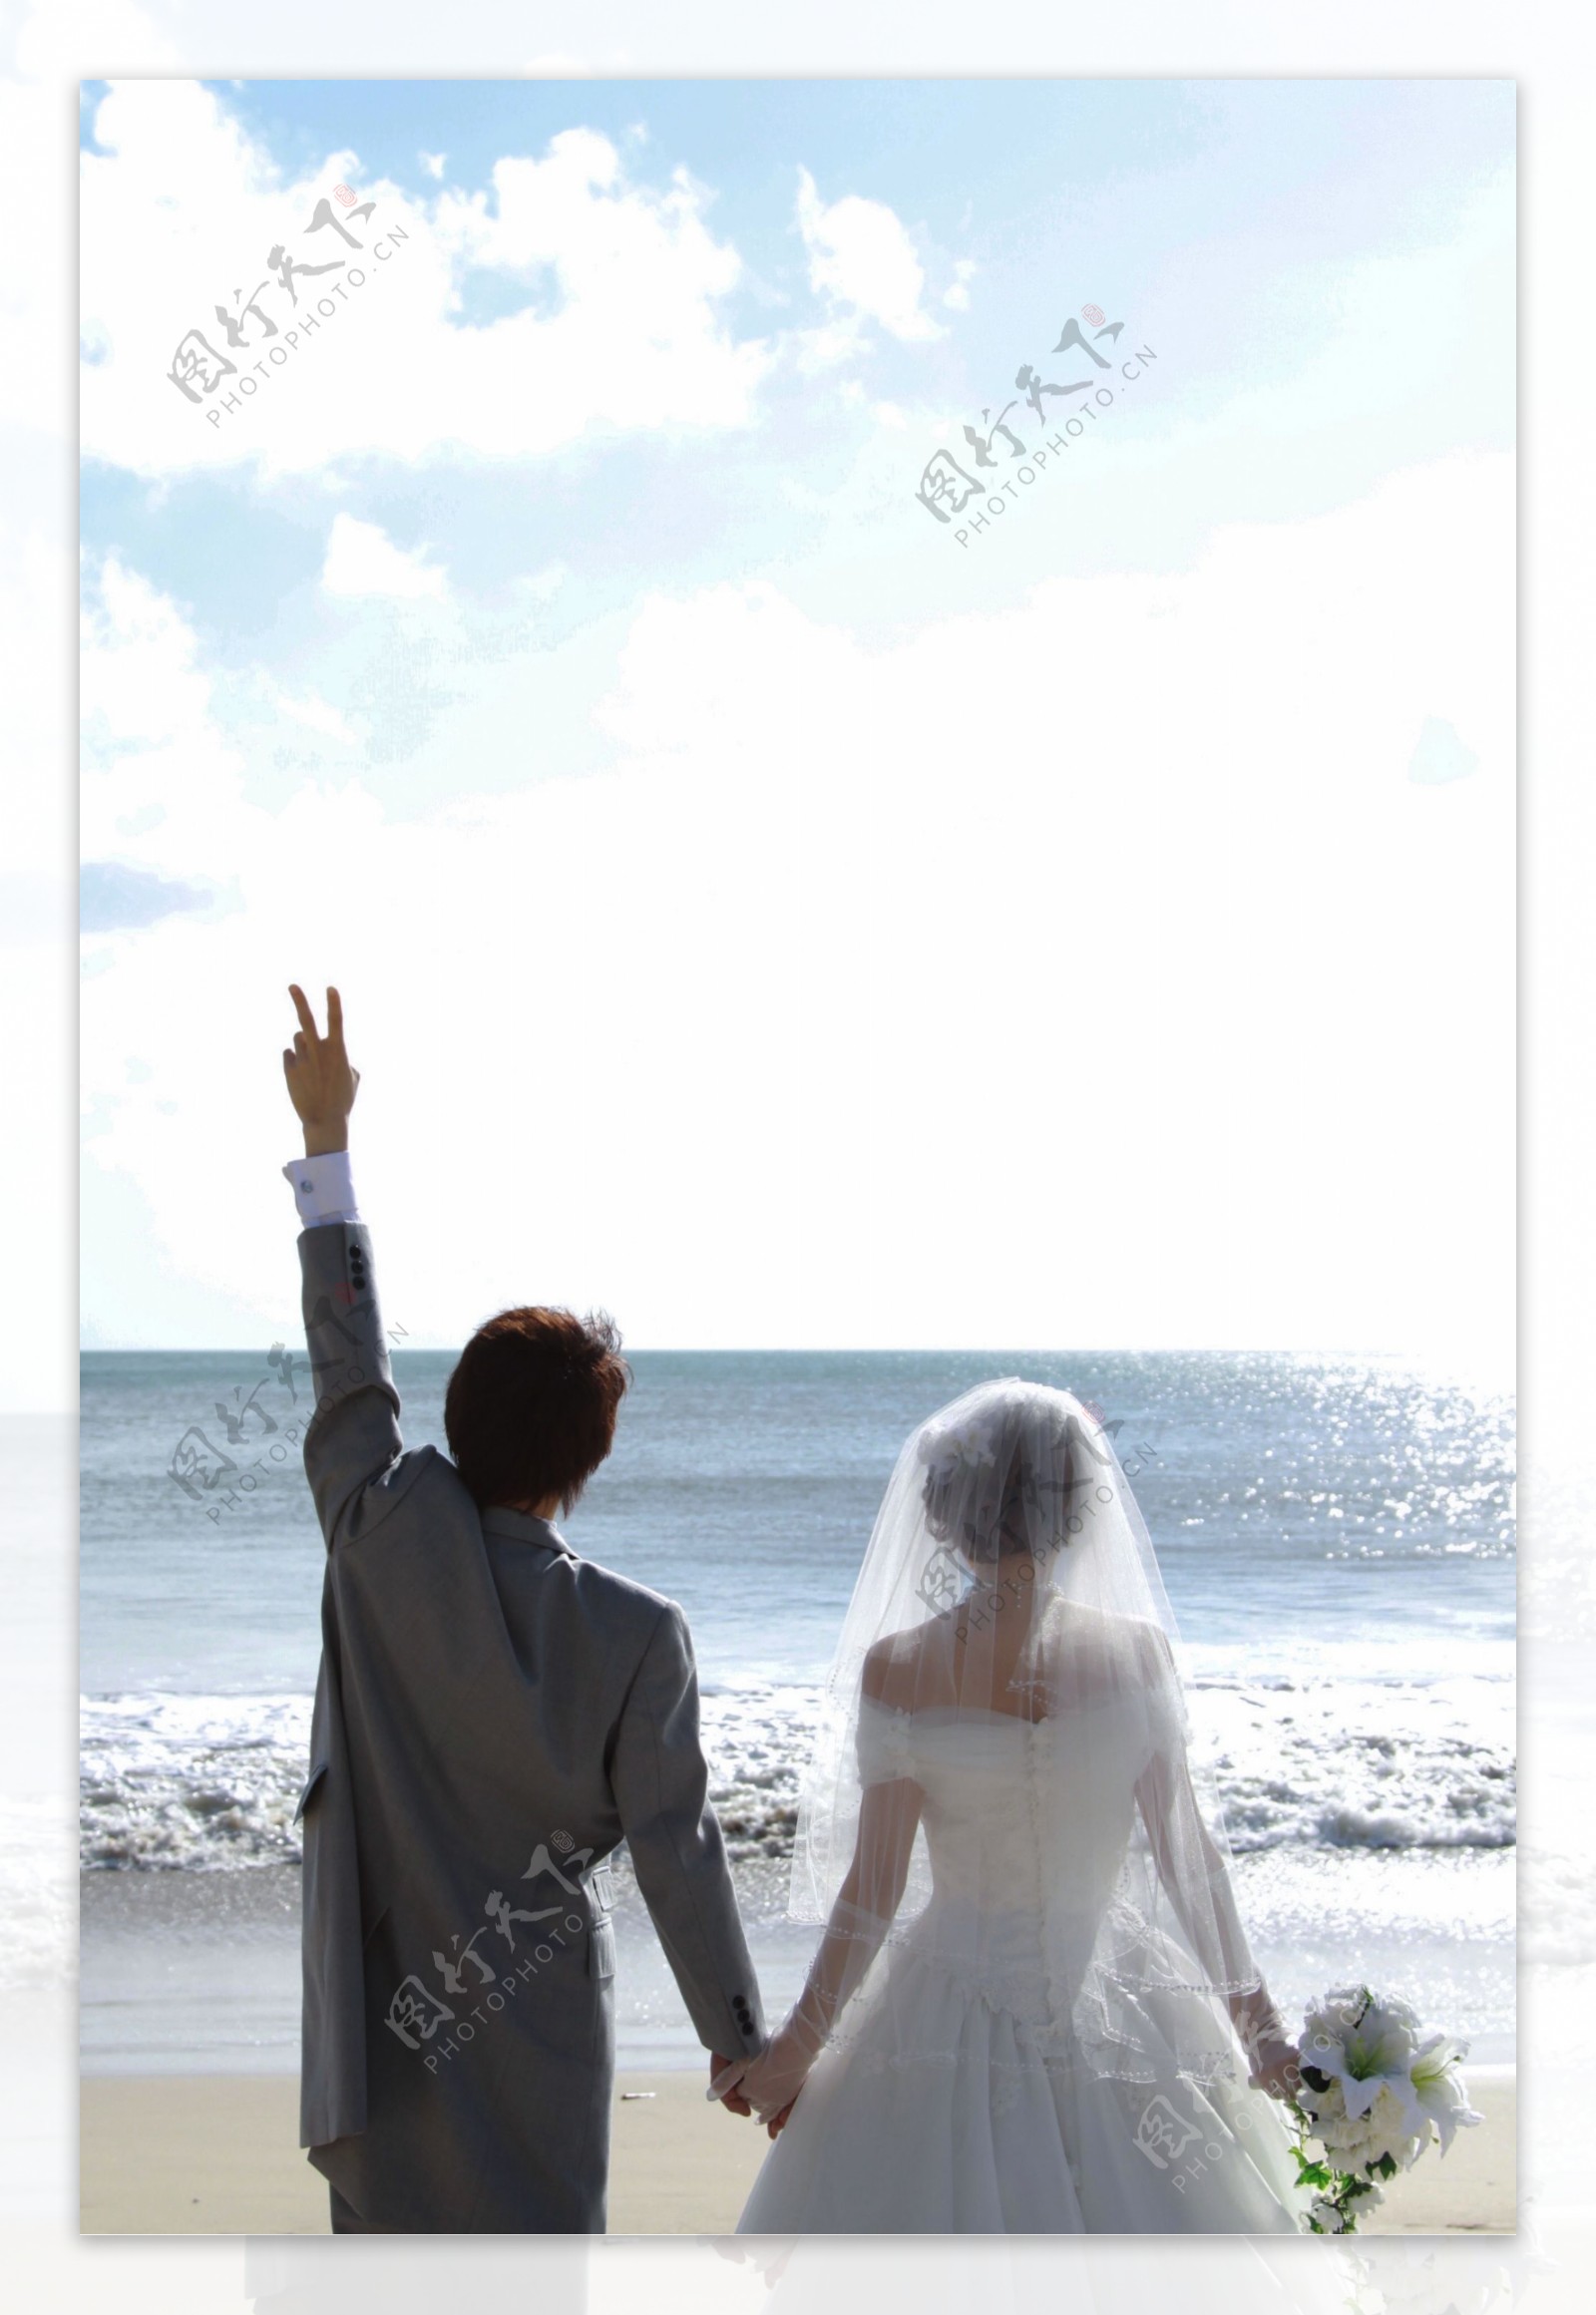 海边沙滩结婚摄影图片